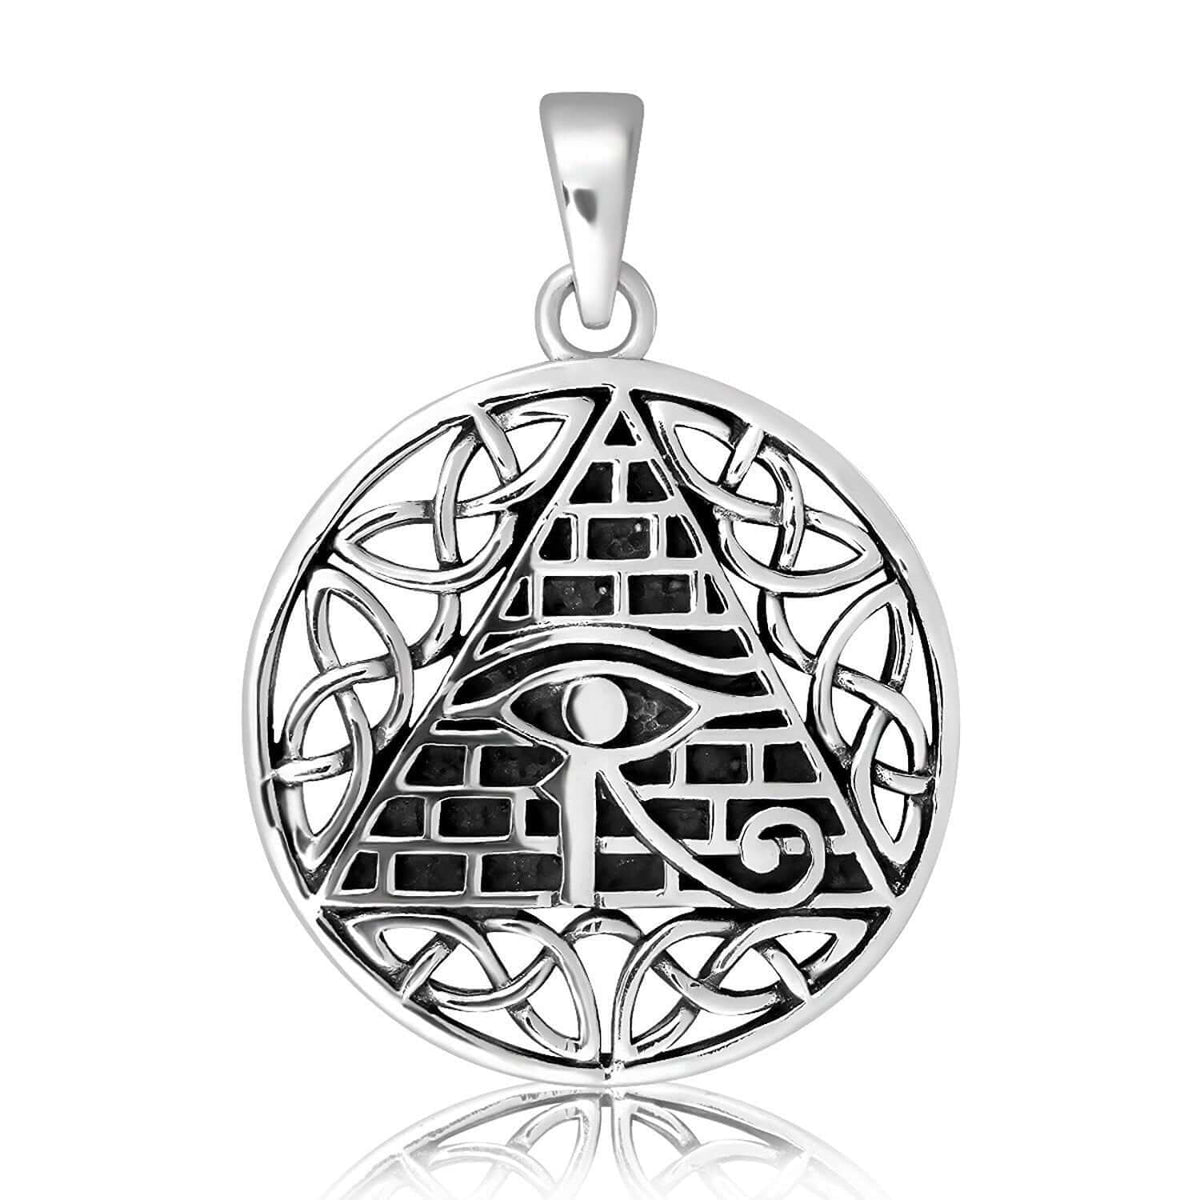 Sterling Silver Illuminati Pendant with Celtic Knots - SilverMania925